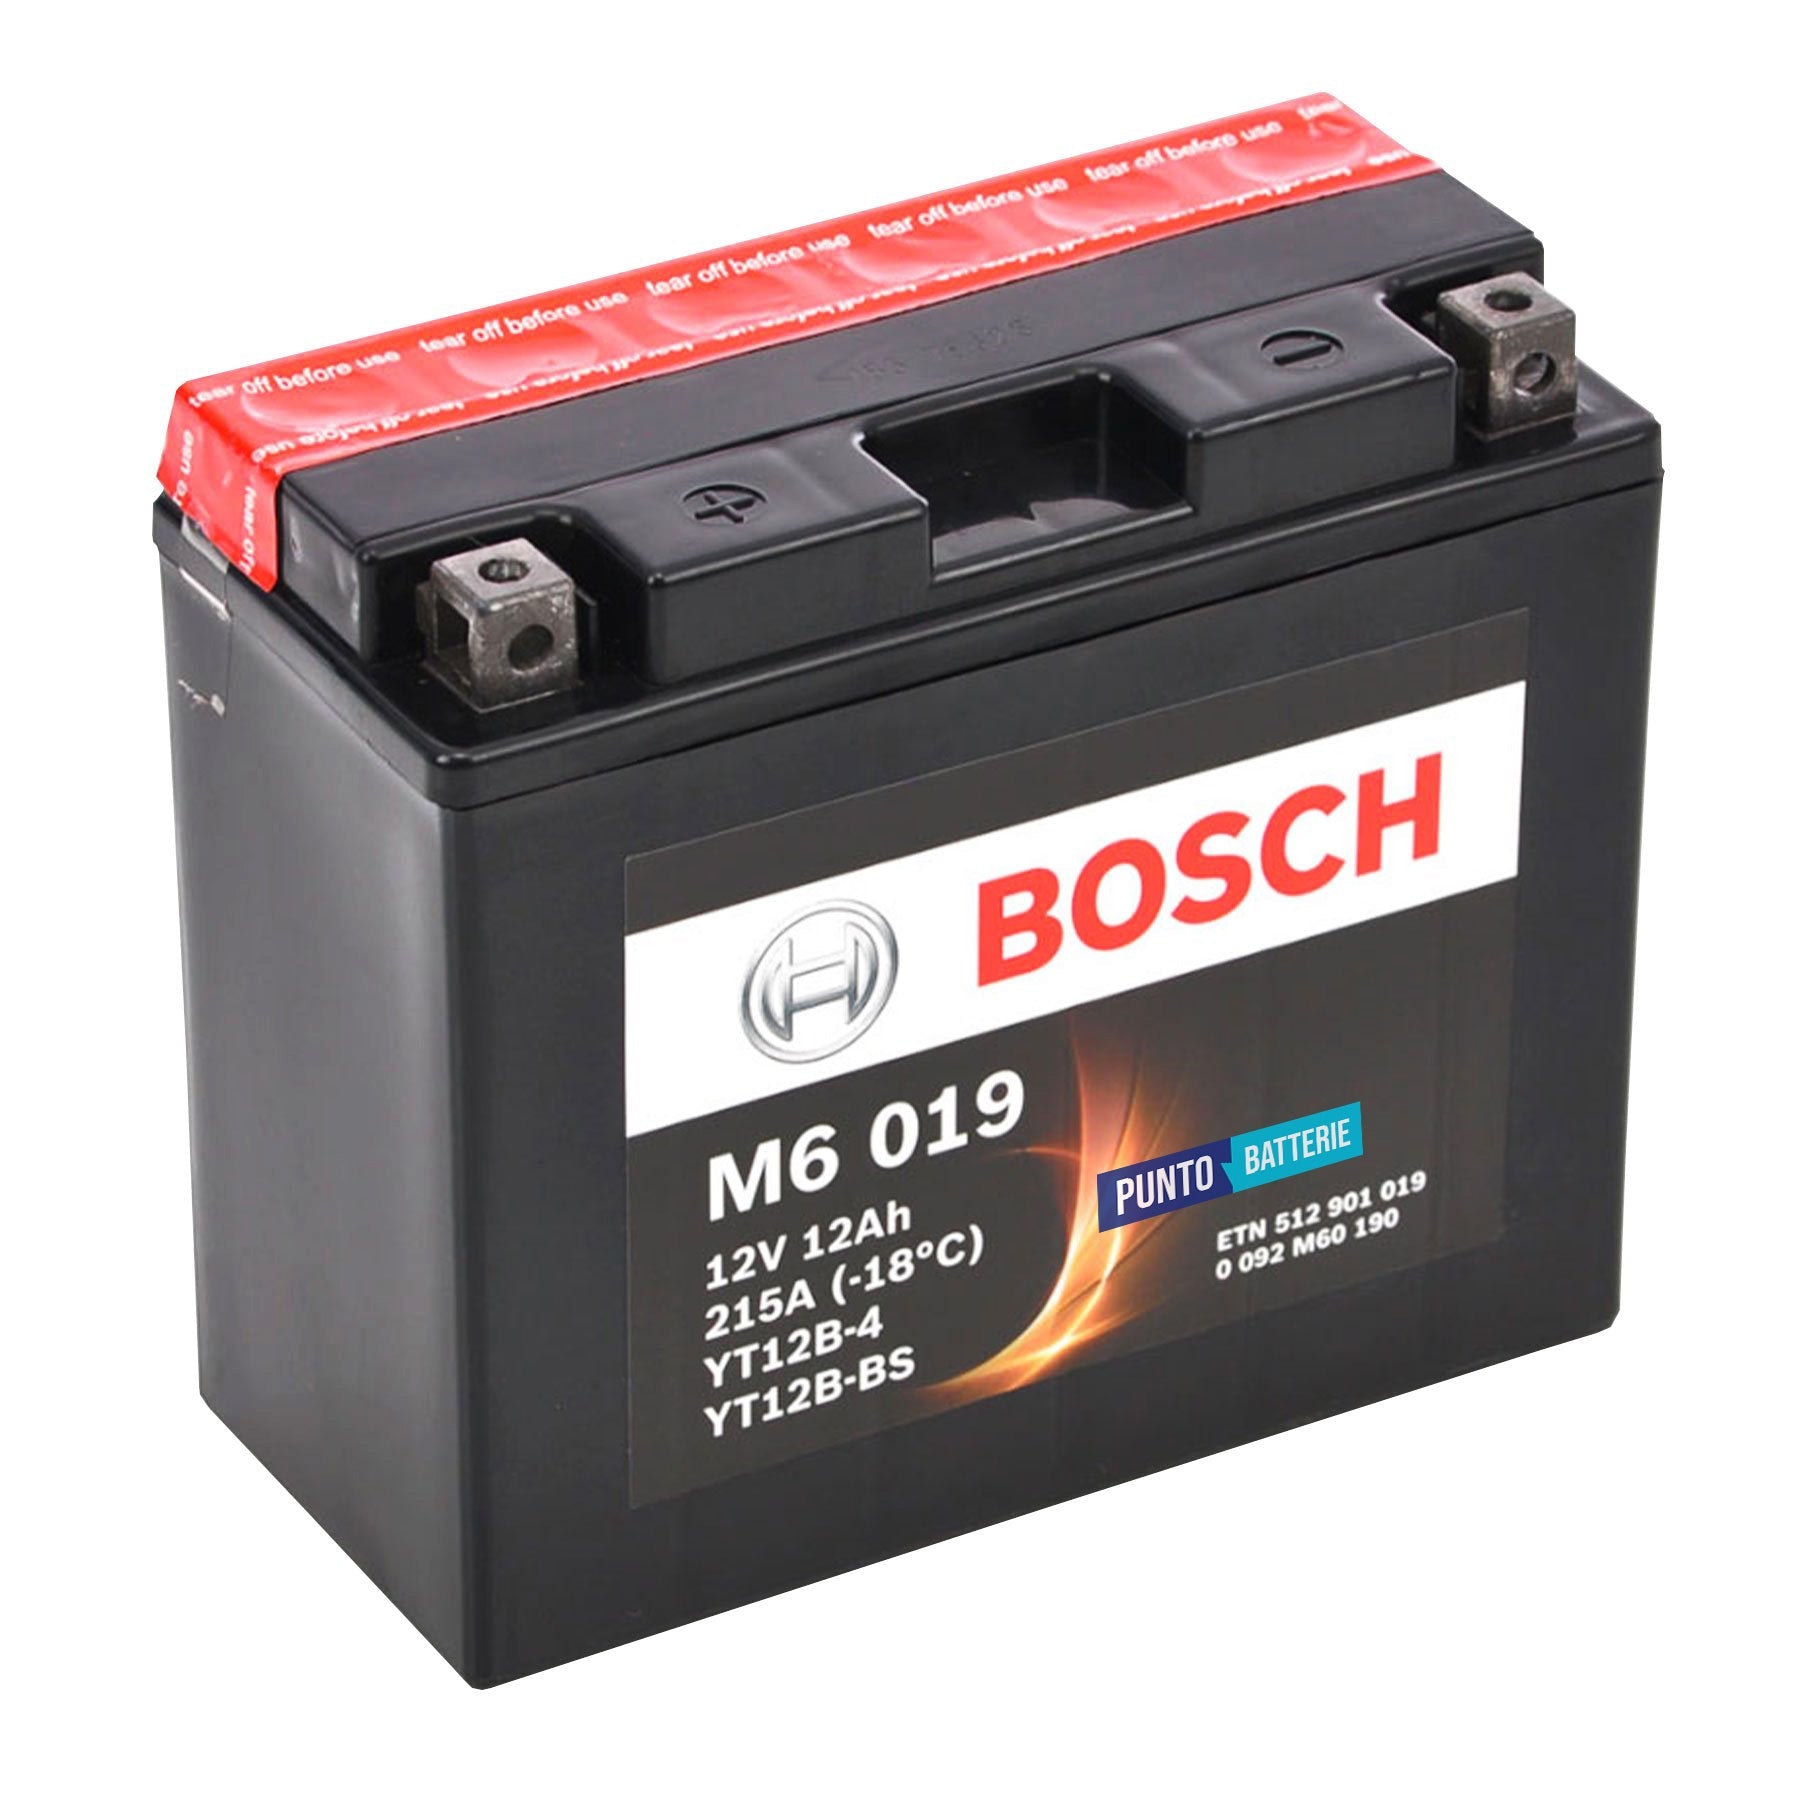 Batteria originale Bosch M6 M6019, dimensioni 150 x 87 x 105, polo positivo a sinistra, 12 volt, 12 amperora, 215 ampere. Batteria per moto, scooter e powersport.